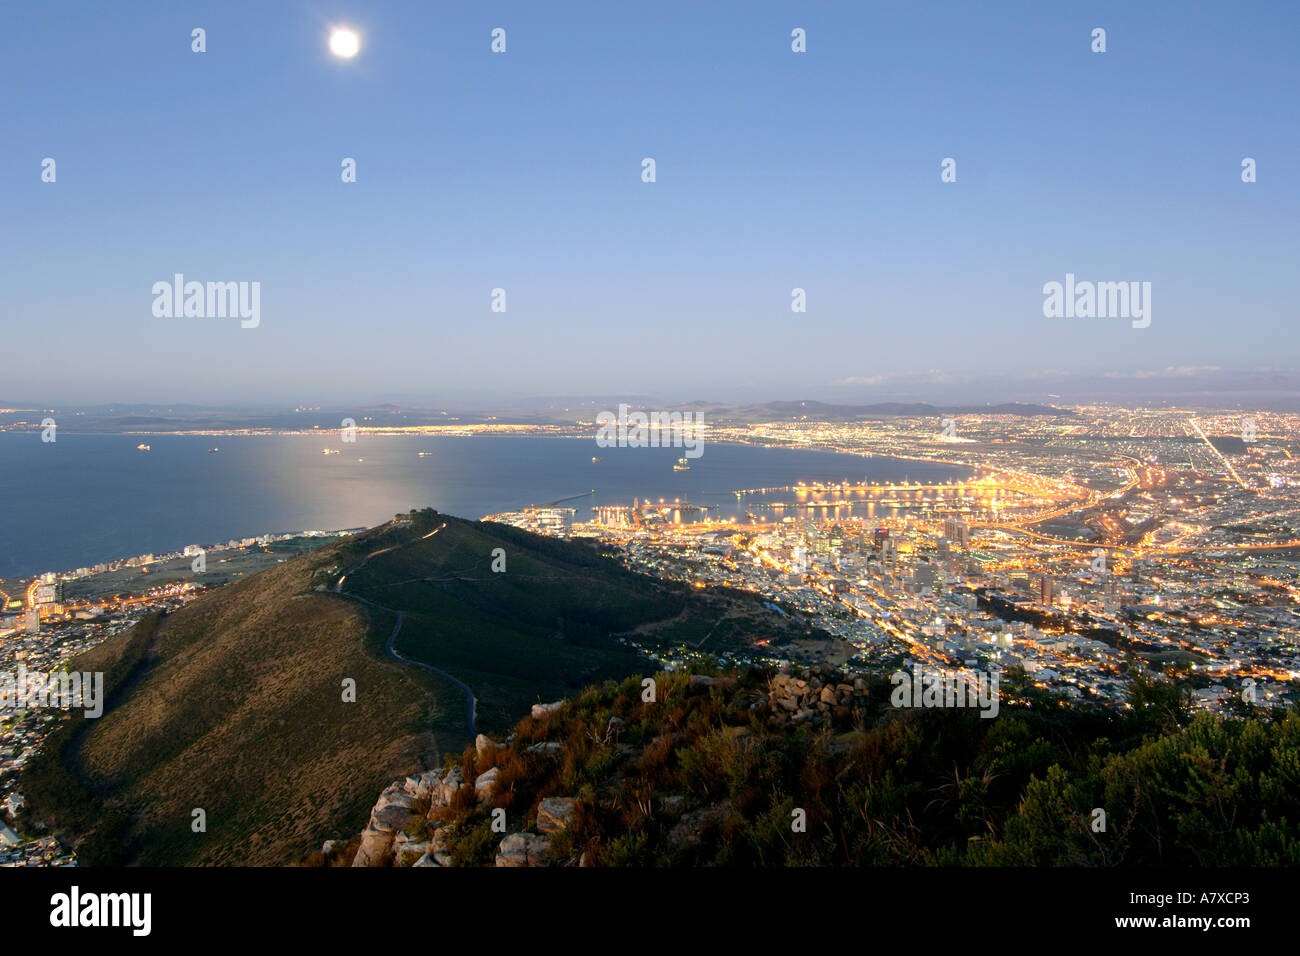 Vista della città di Cape Town Signal Hill e la luna dal vertice della testa di leone al tramonto.la luna piena è visibile. Foto Stock